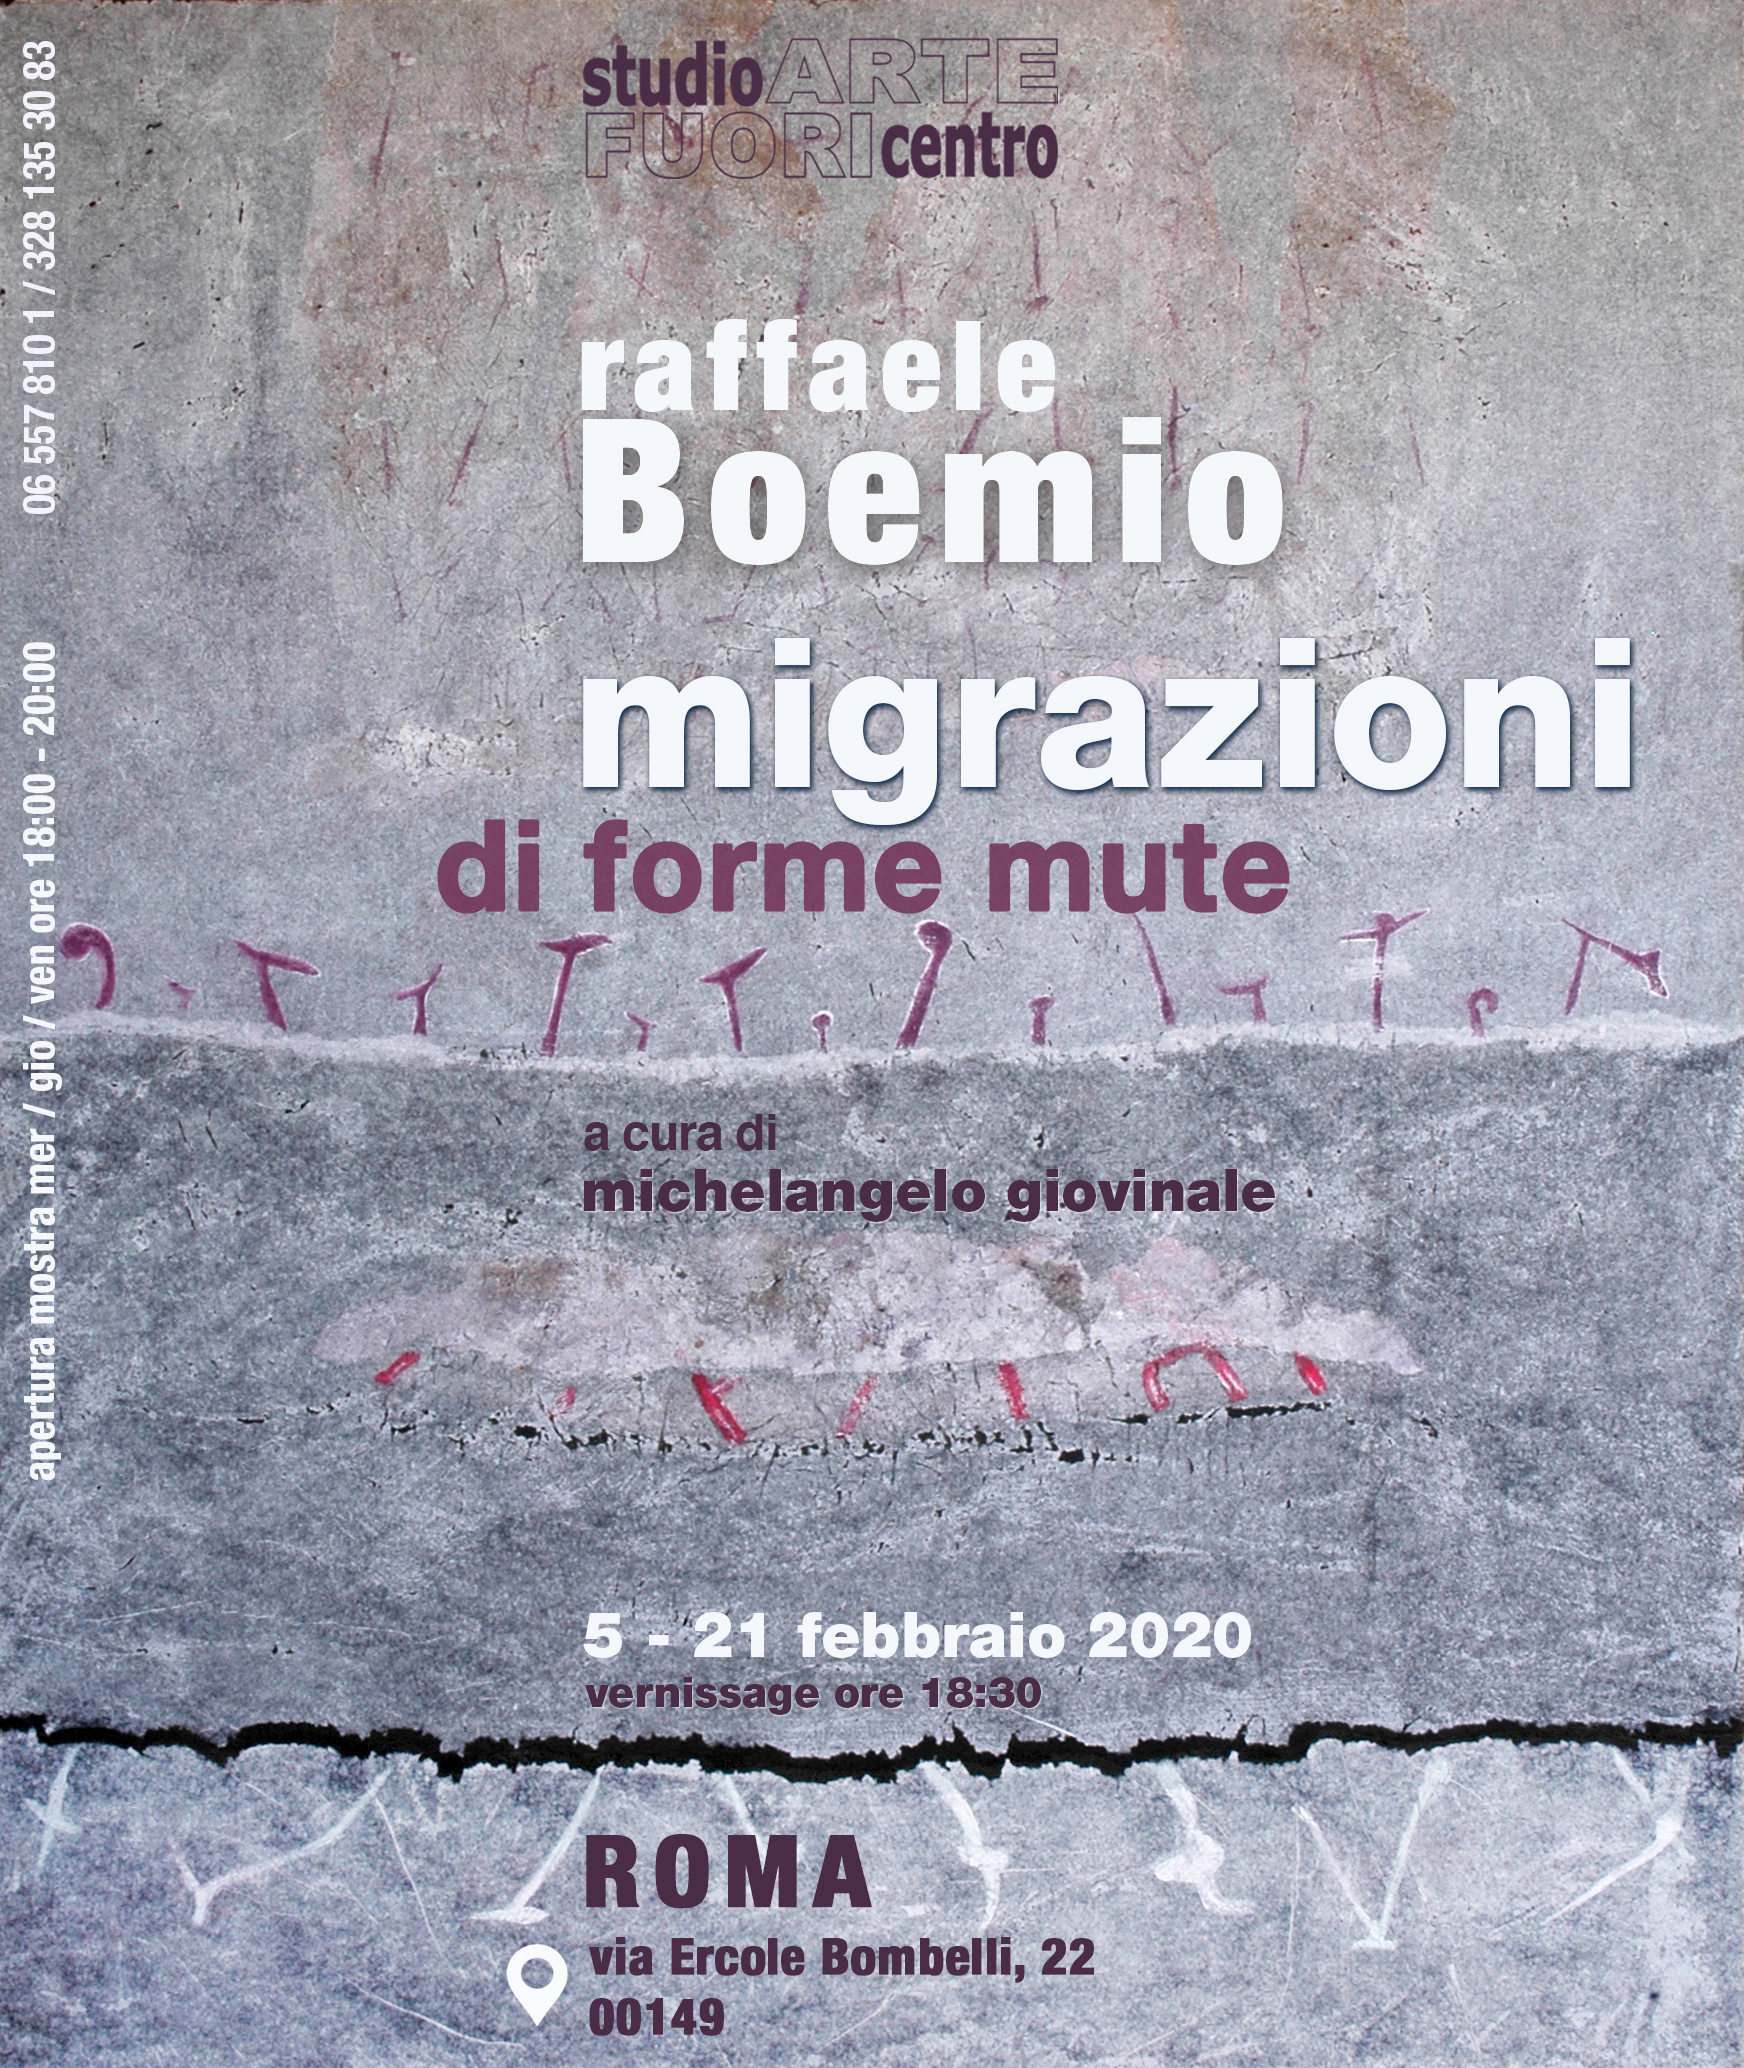 Migrazioni di forme mute  opere di Raffaele Boemio